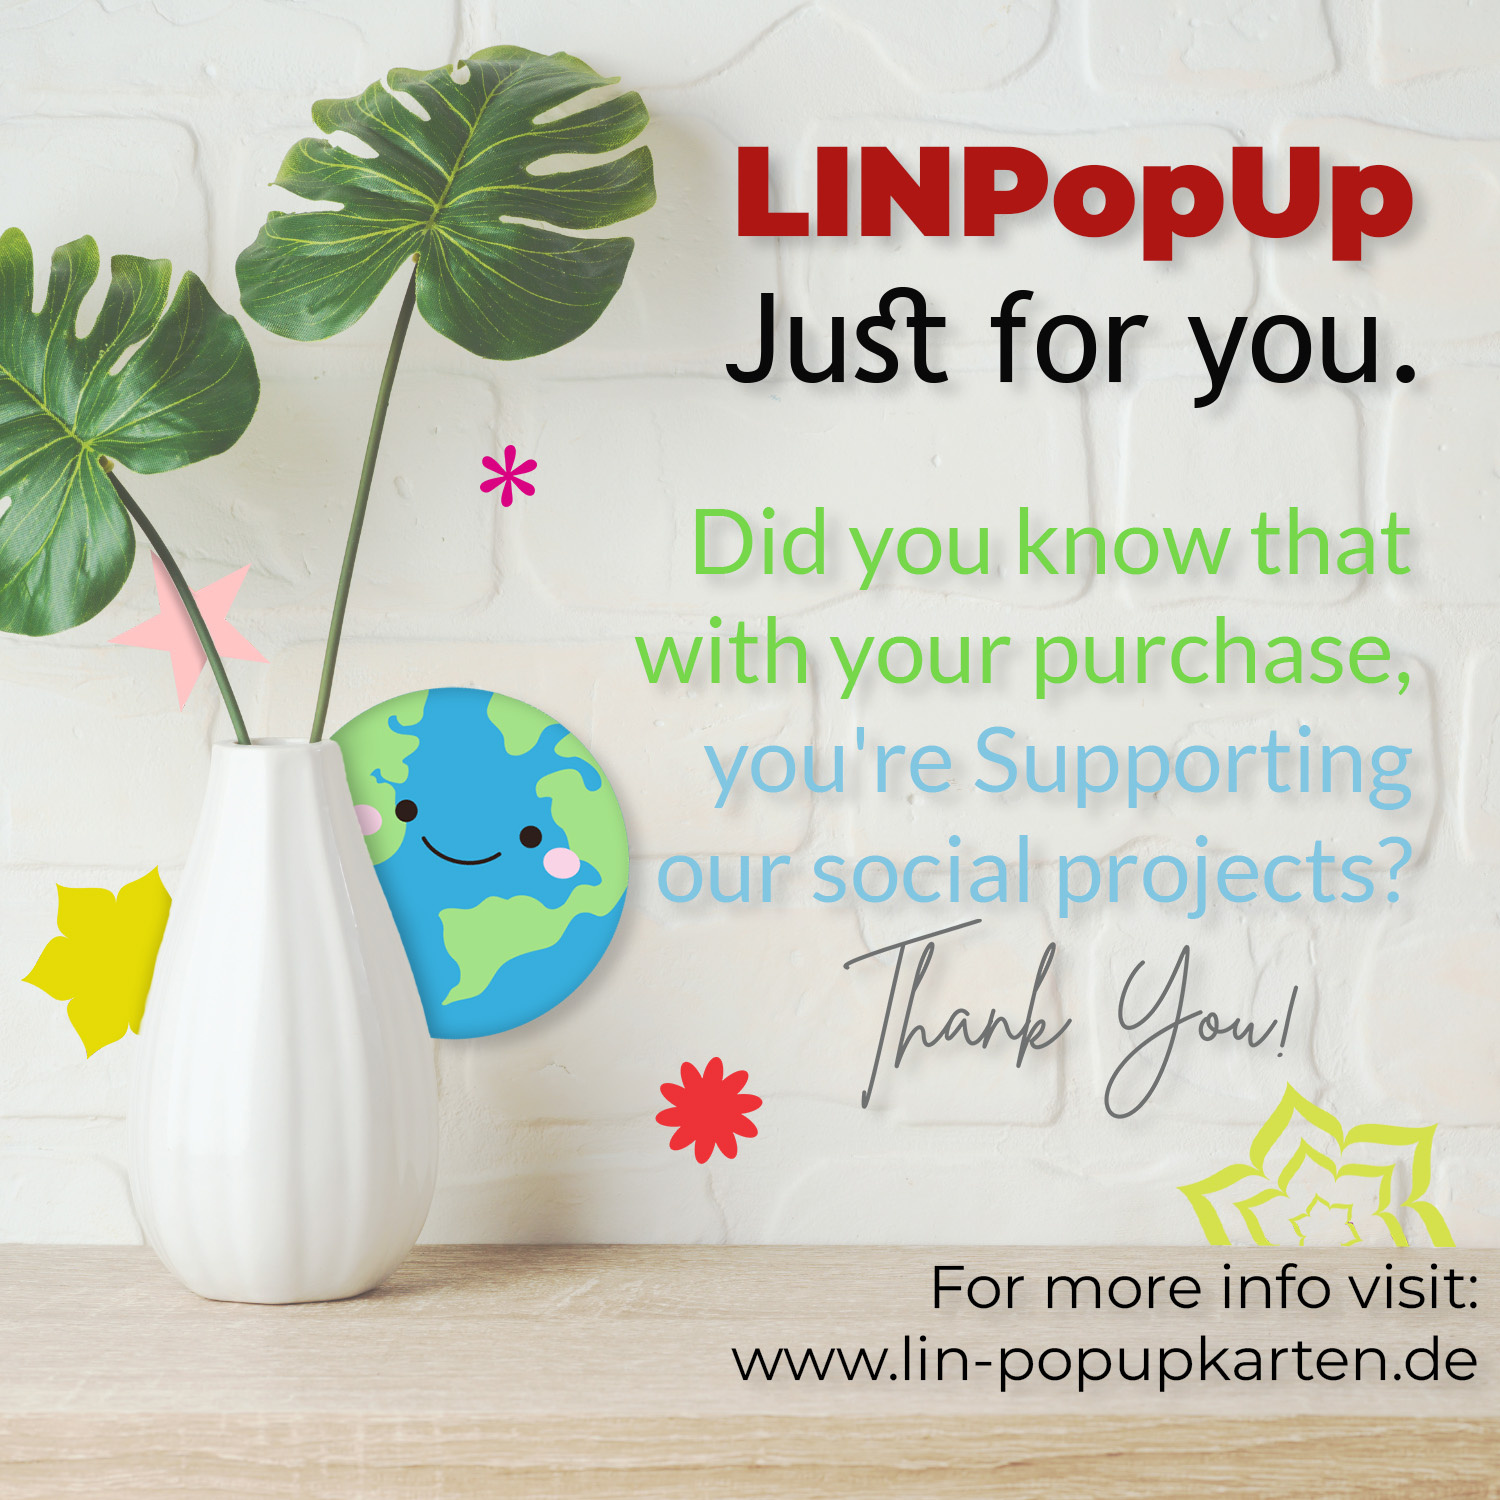 LINPOPUP Pop-Up Karte 3D Geburtstagskarte Lilien - Jubiläumskarte - Glückwunsch-Karte - Überraschungs Klapp-Karte mit 3D Effekt - Blumenstrauß, Pop Up Karten Weiße Lilien, LIN17760, LINPopUp®, N500